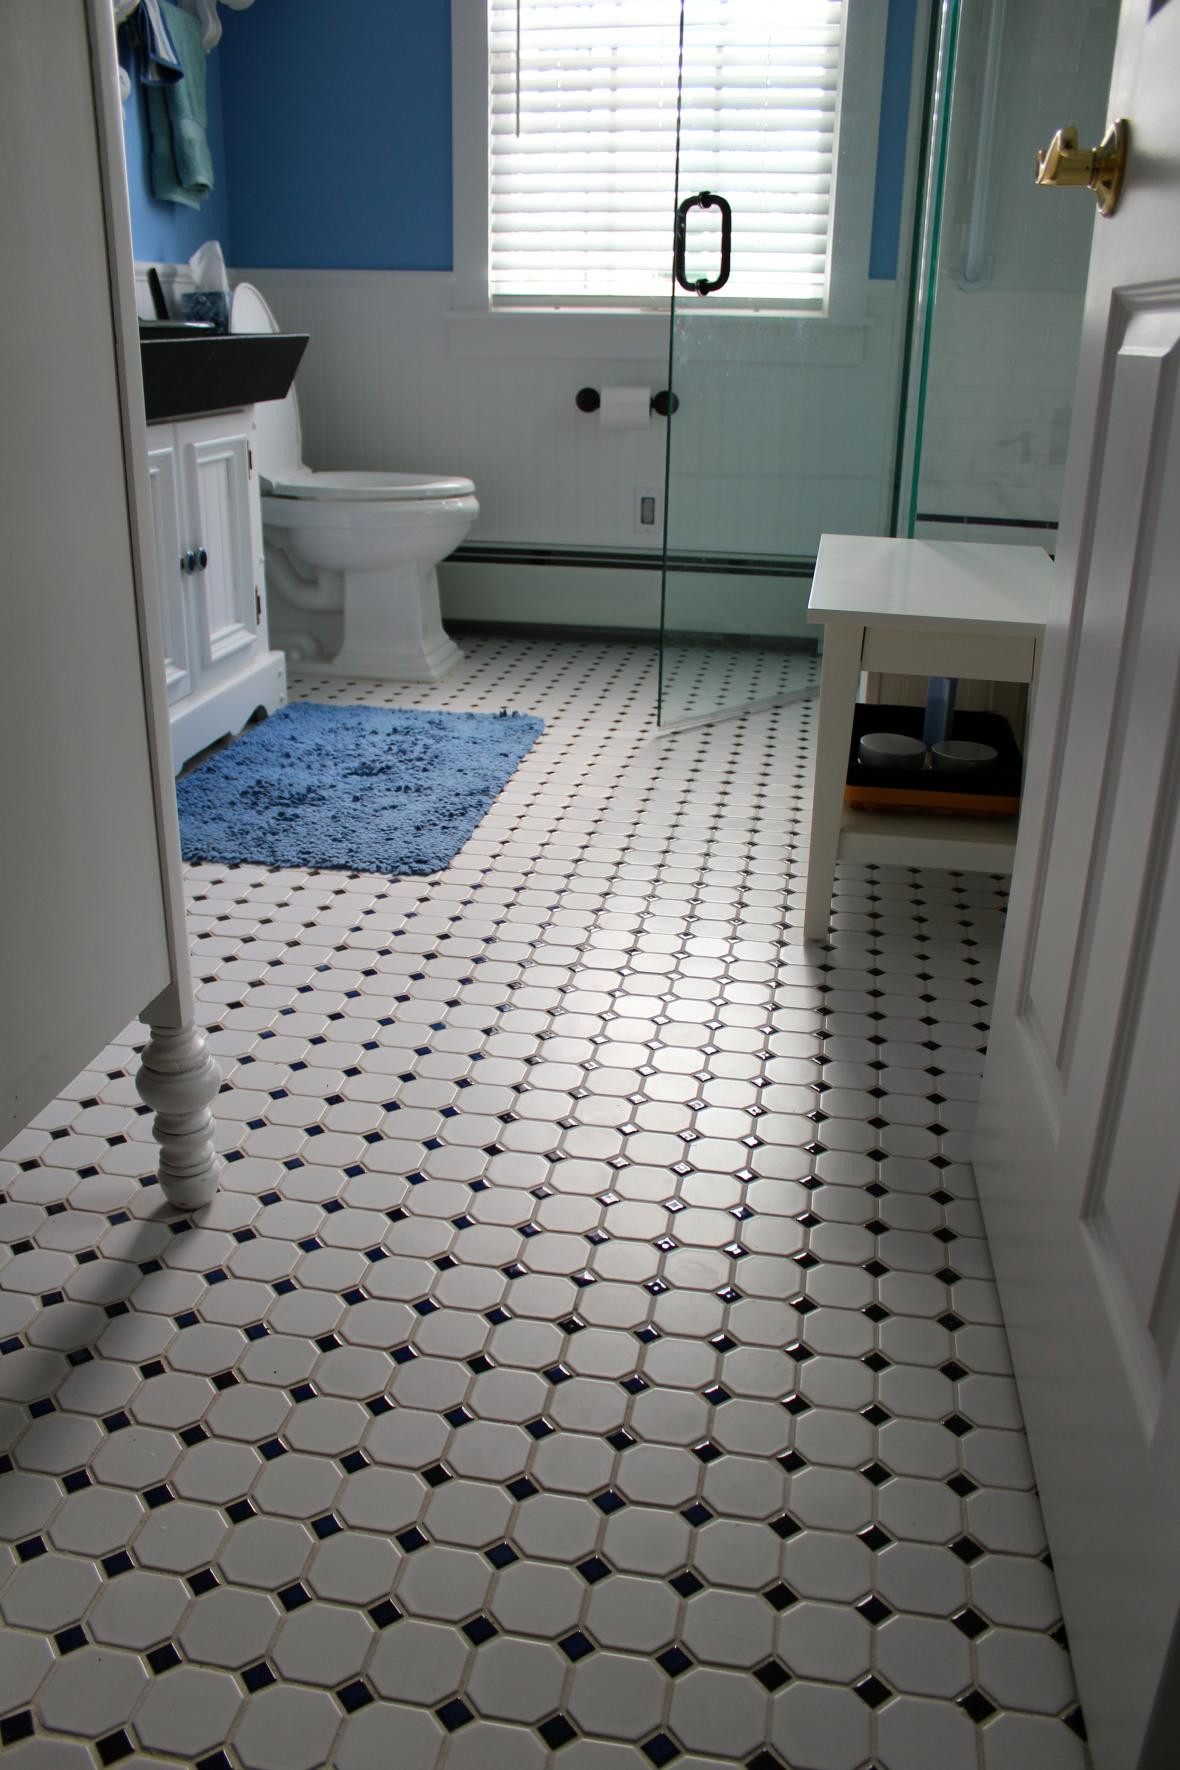 Vintage Bathroom Tile For Sale
 Bathroom floor tiling vintage floor tiles and sale